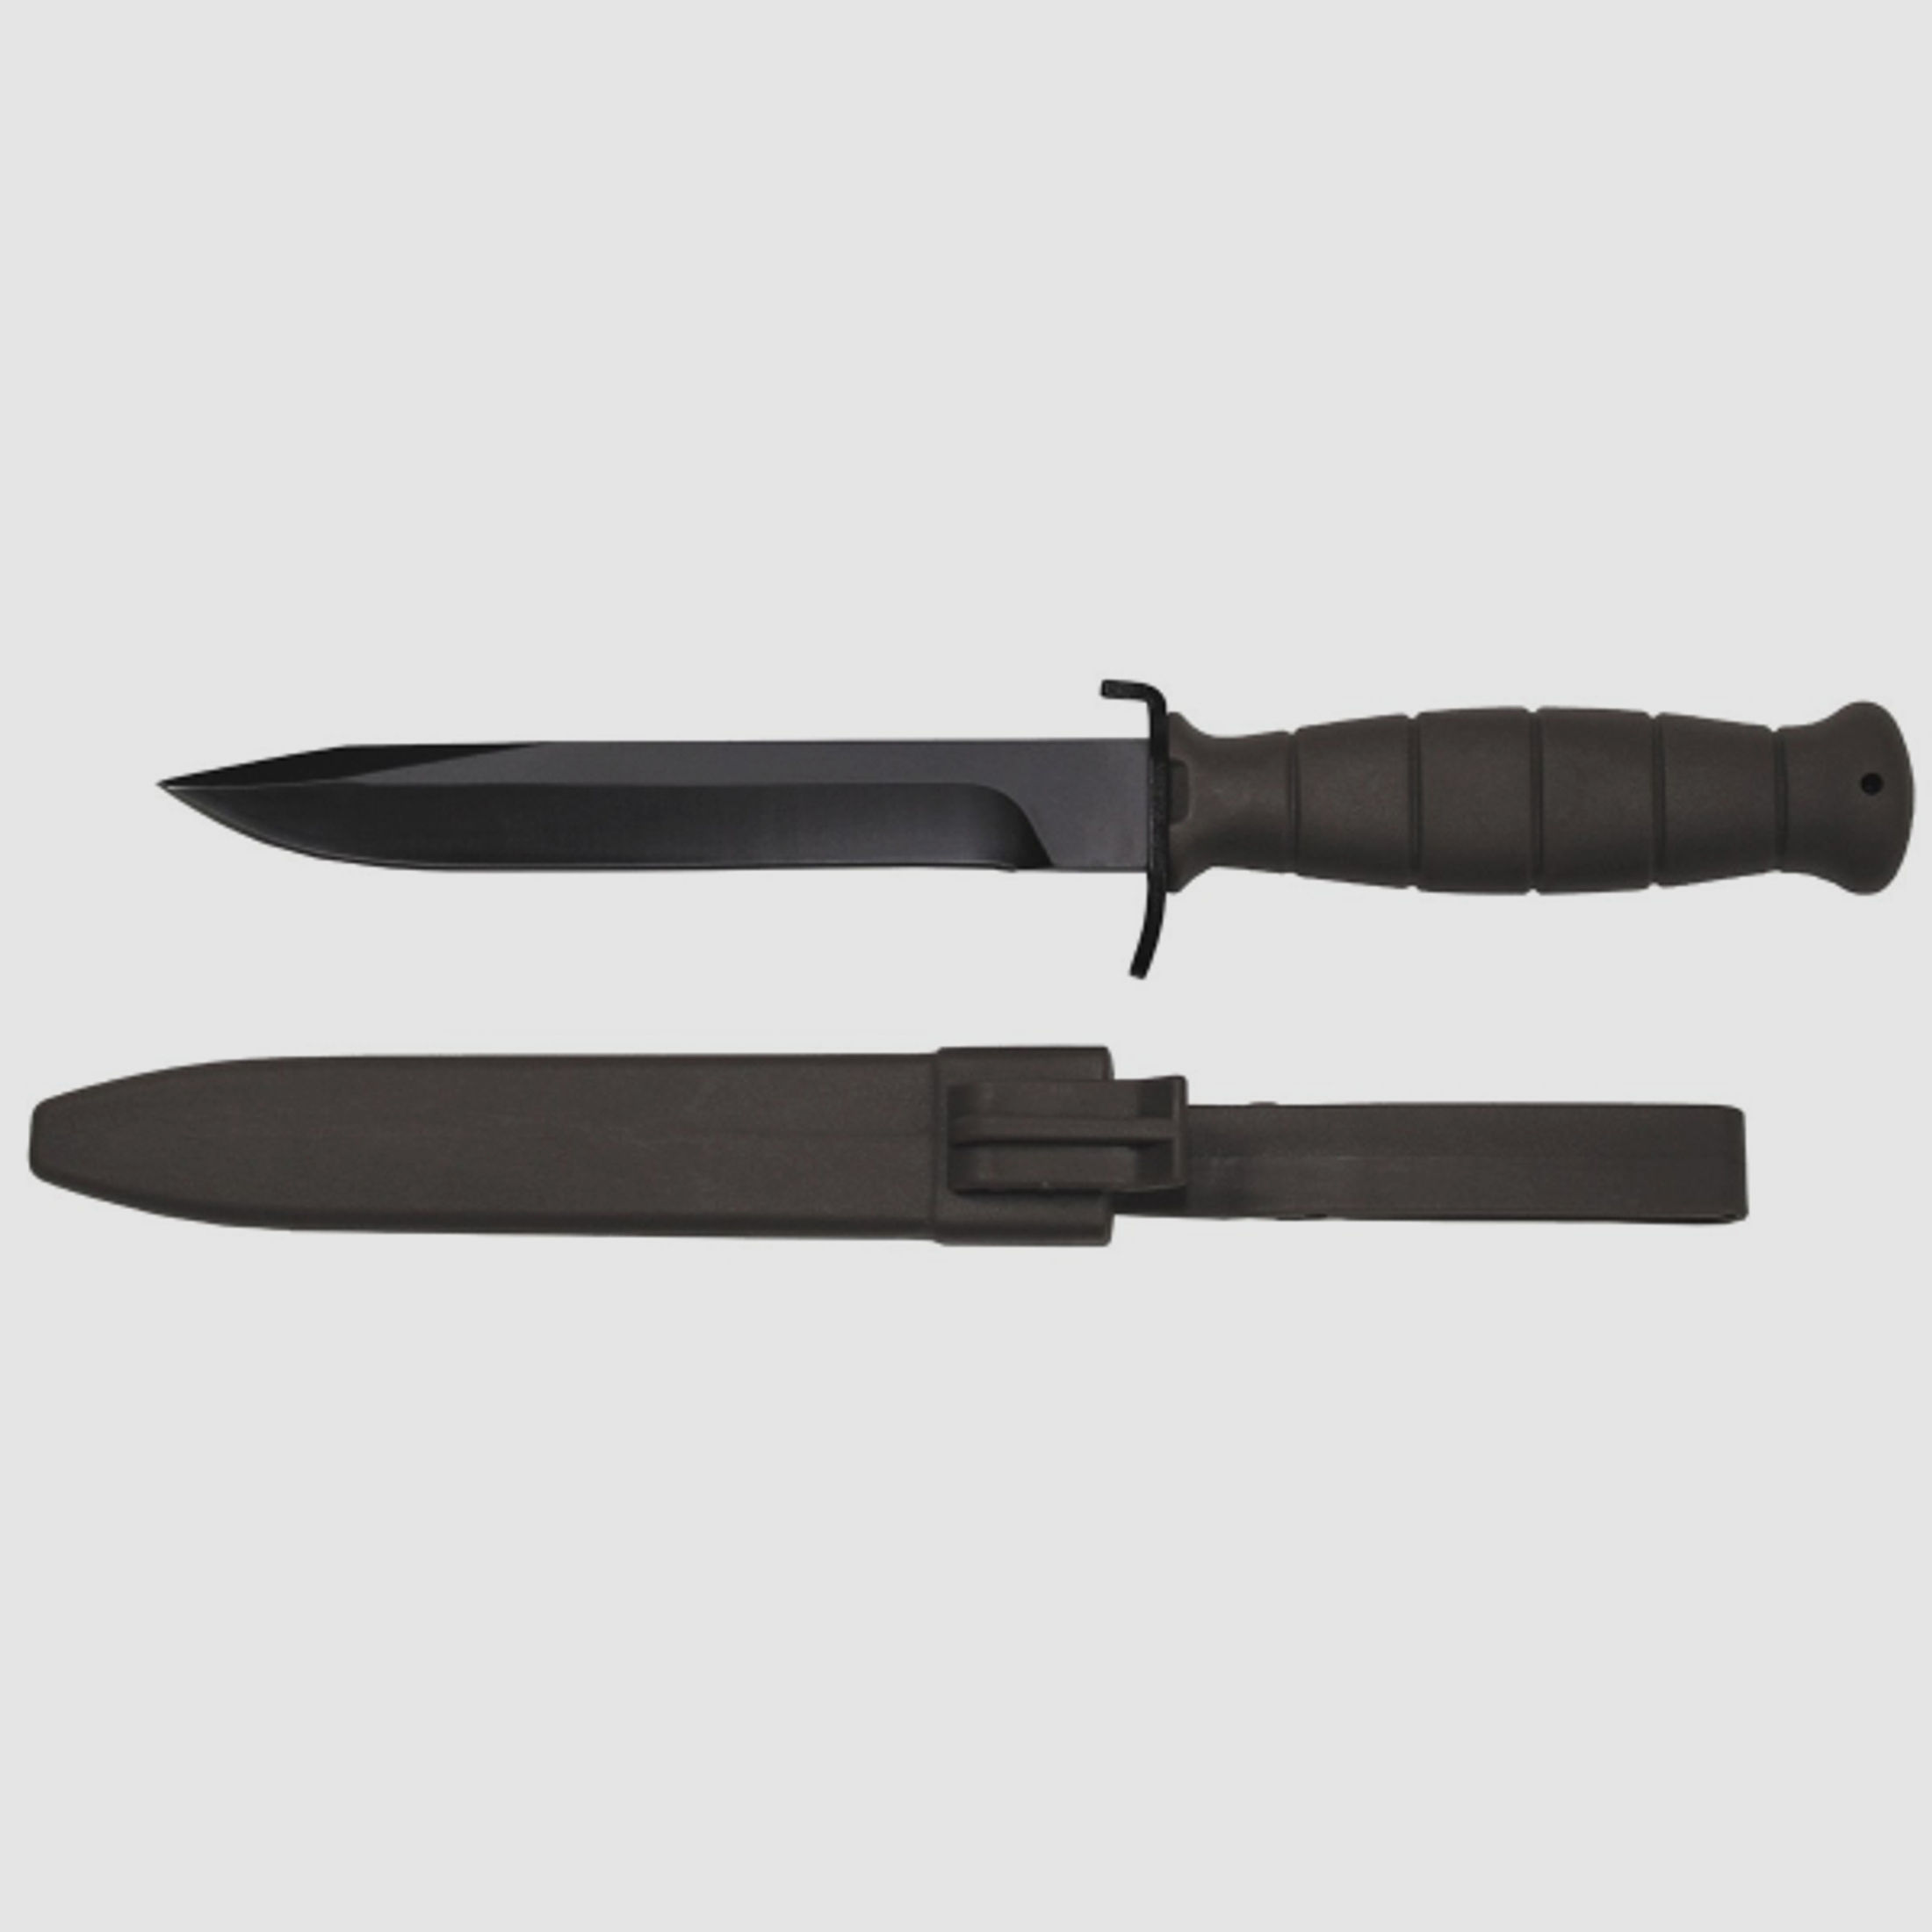 ÖBH Kampfmesser / Feldmesser 16,5/29cm - Glock - Nachbau - Schwarz / Oliv mit Kunststoff - Scheide